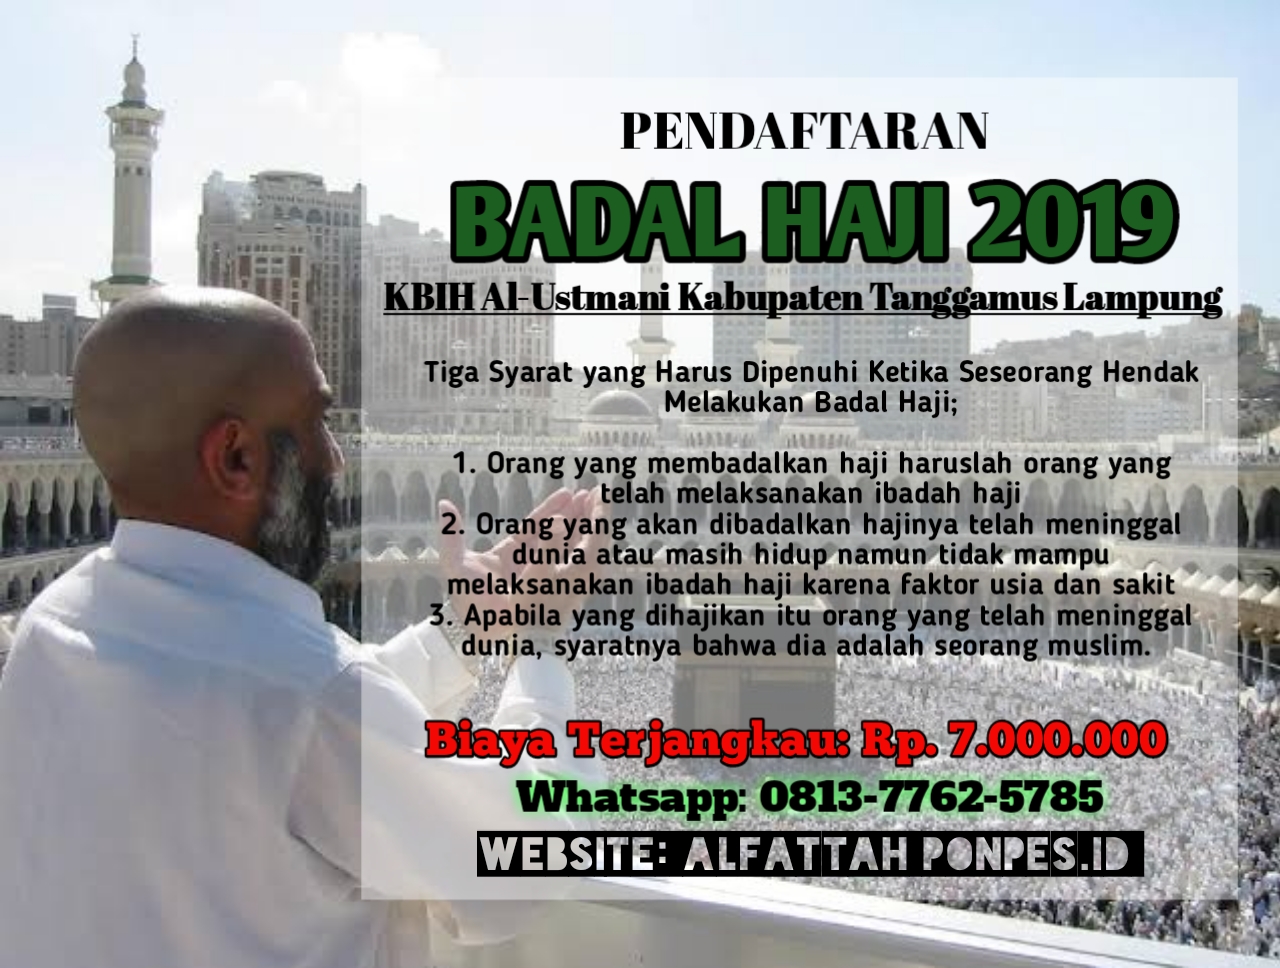 Menerima Pendaftaran Haji Badal Kabupaten Tanggamus Lampung